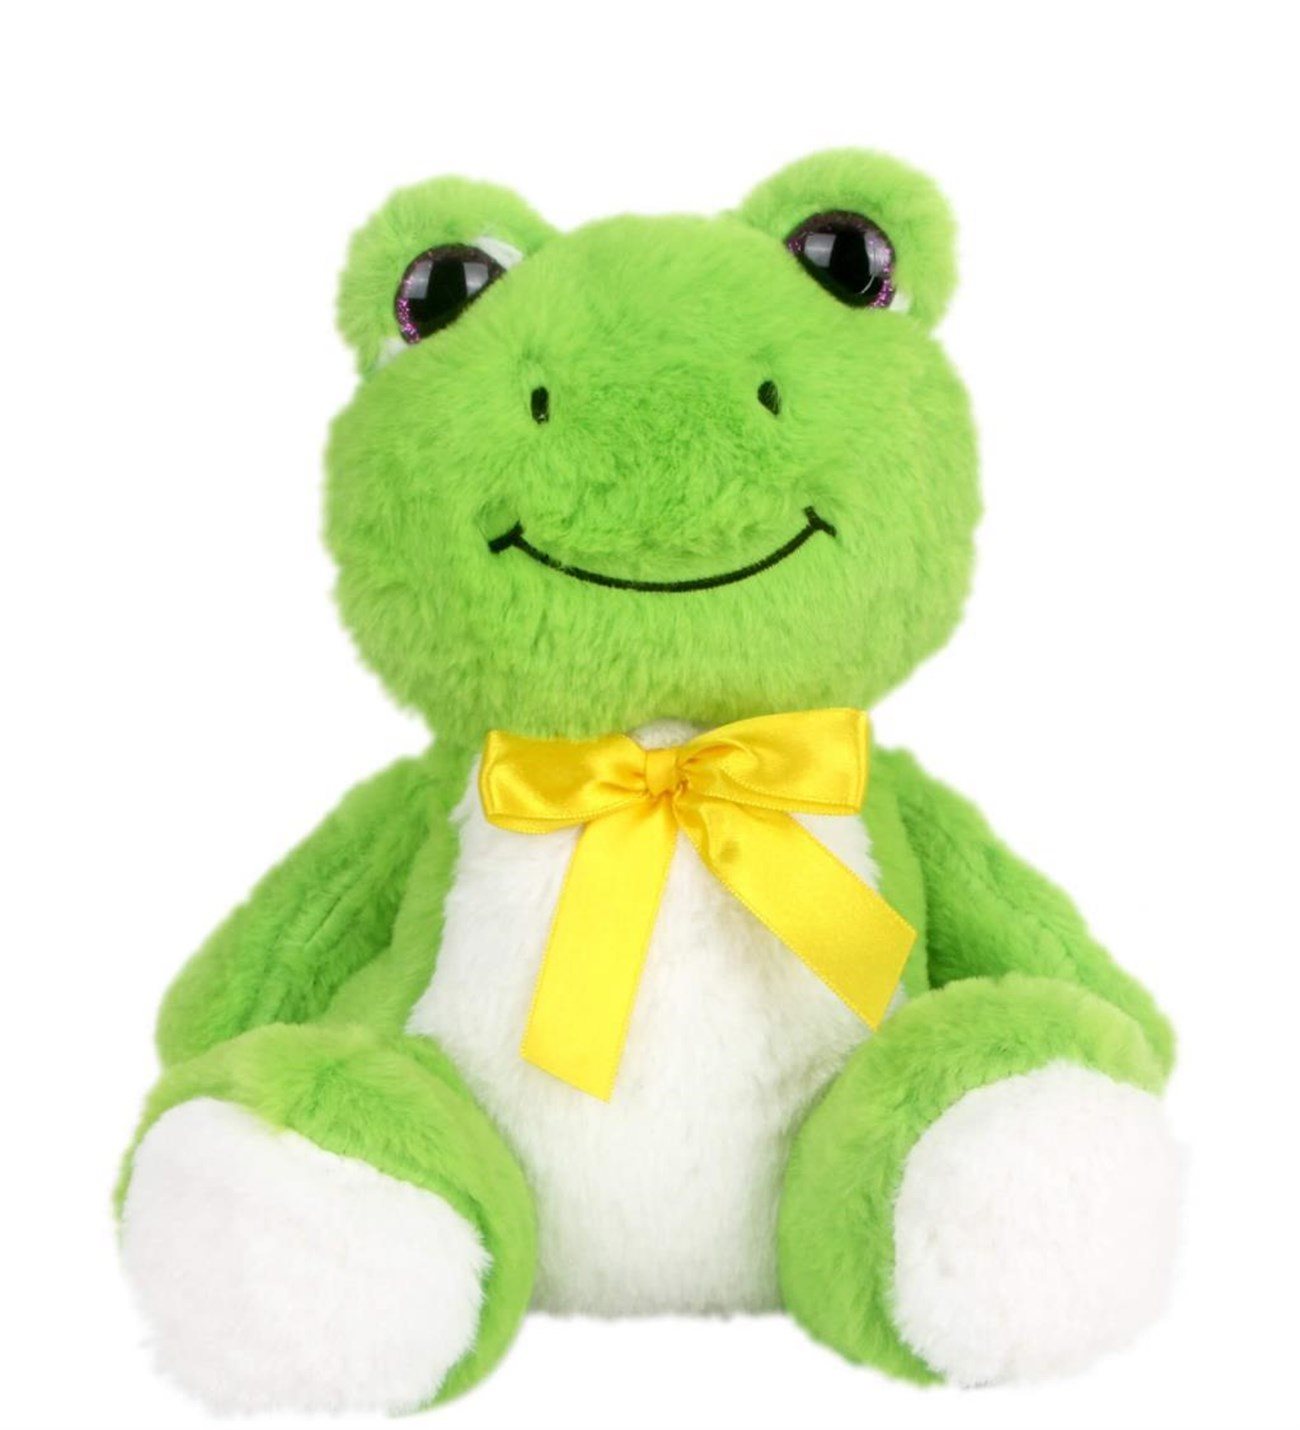 Tatlı Kurbağa Peluş Oyuncak Kermit 25 Cm